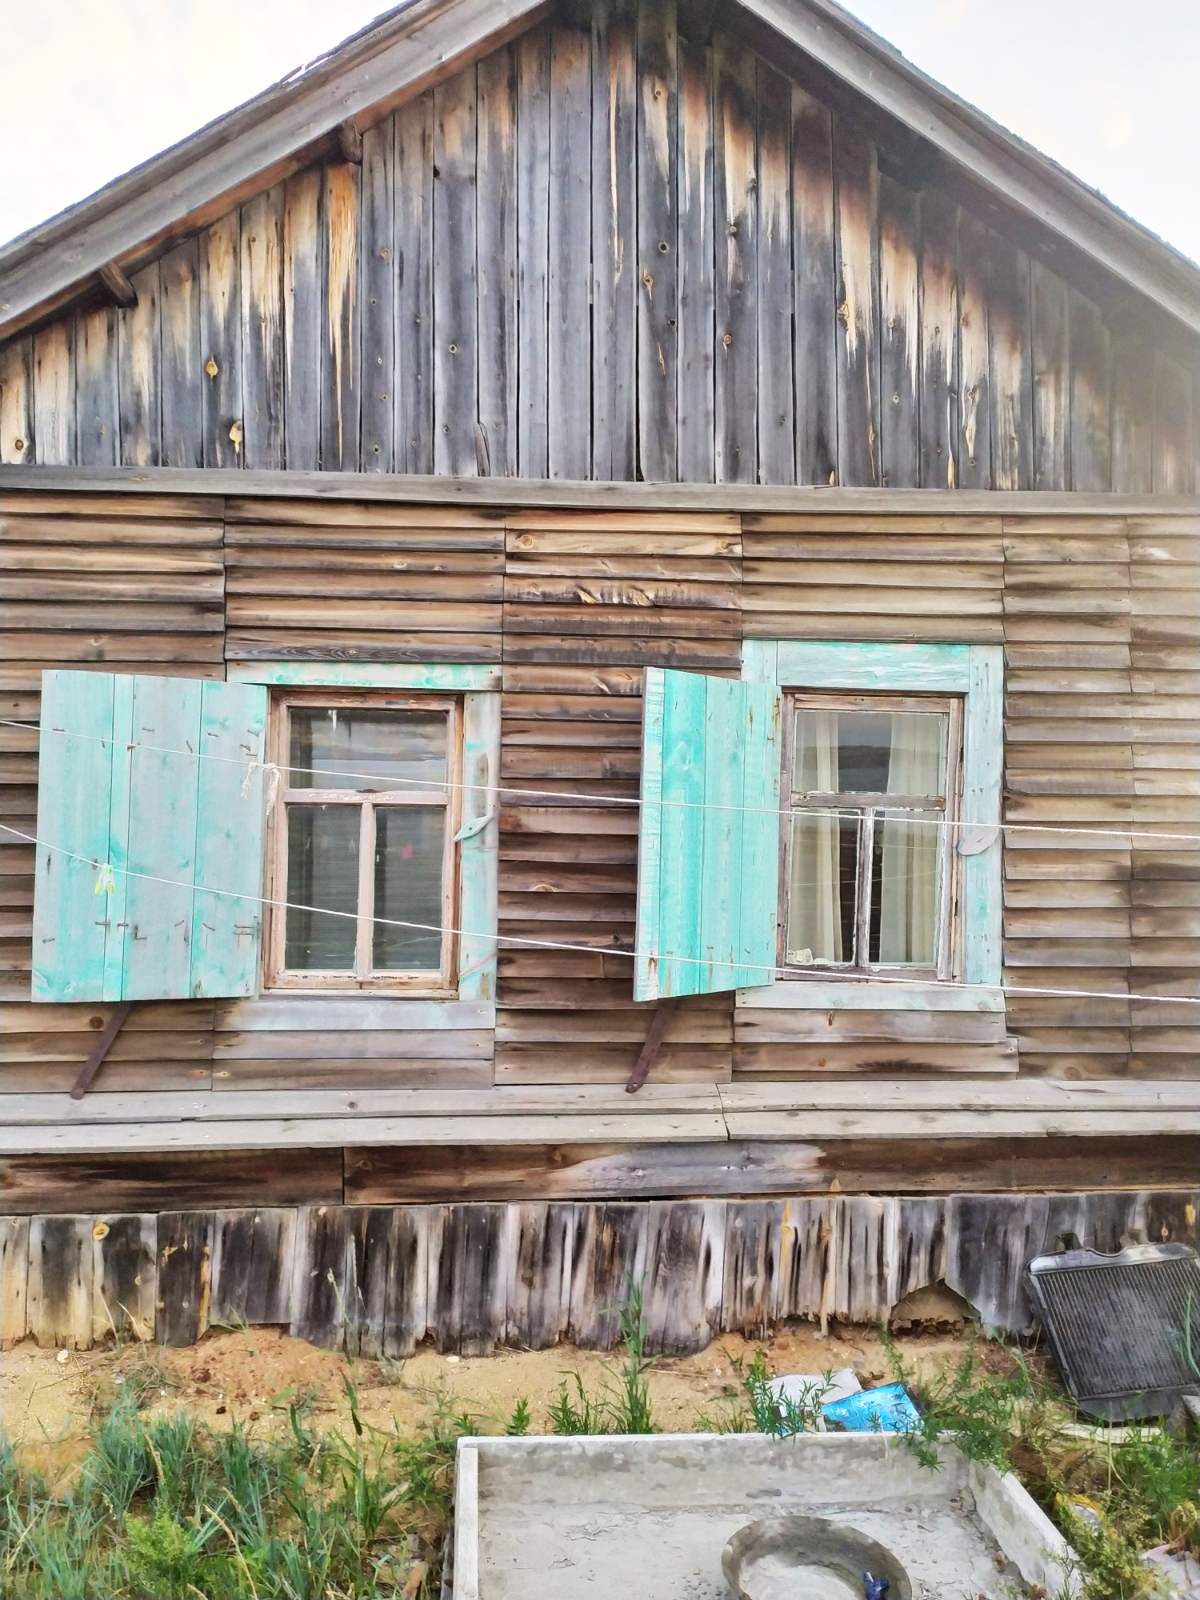 Жителей Песчаной попросили освободить дома, в которых они прожили много лет. Фото Татьяны Вокиной